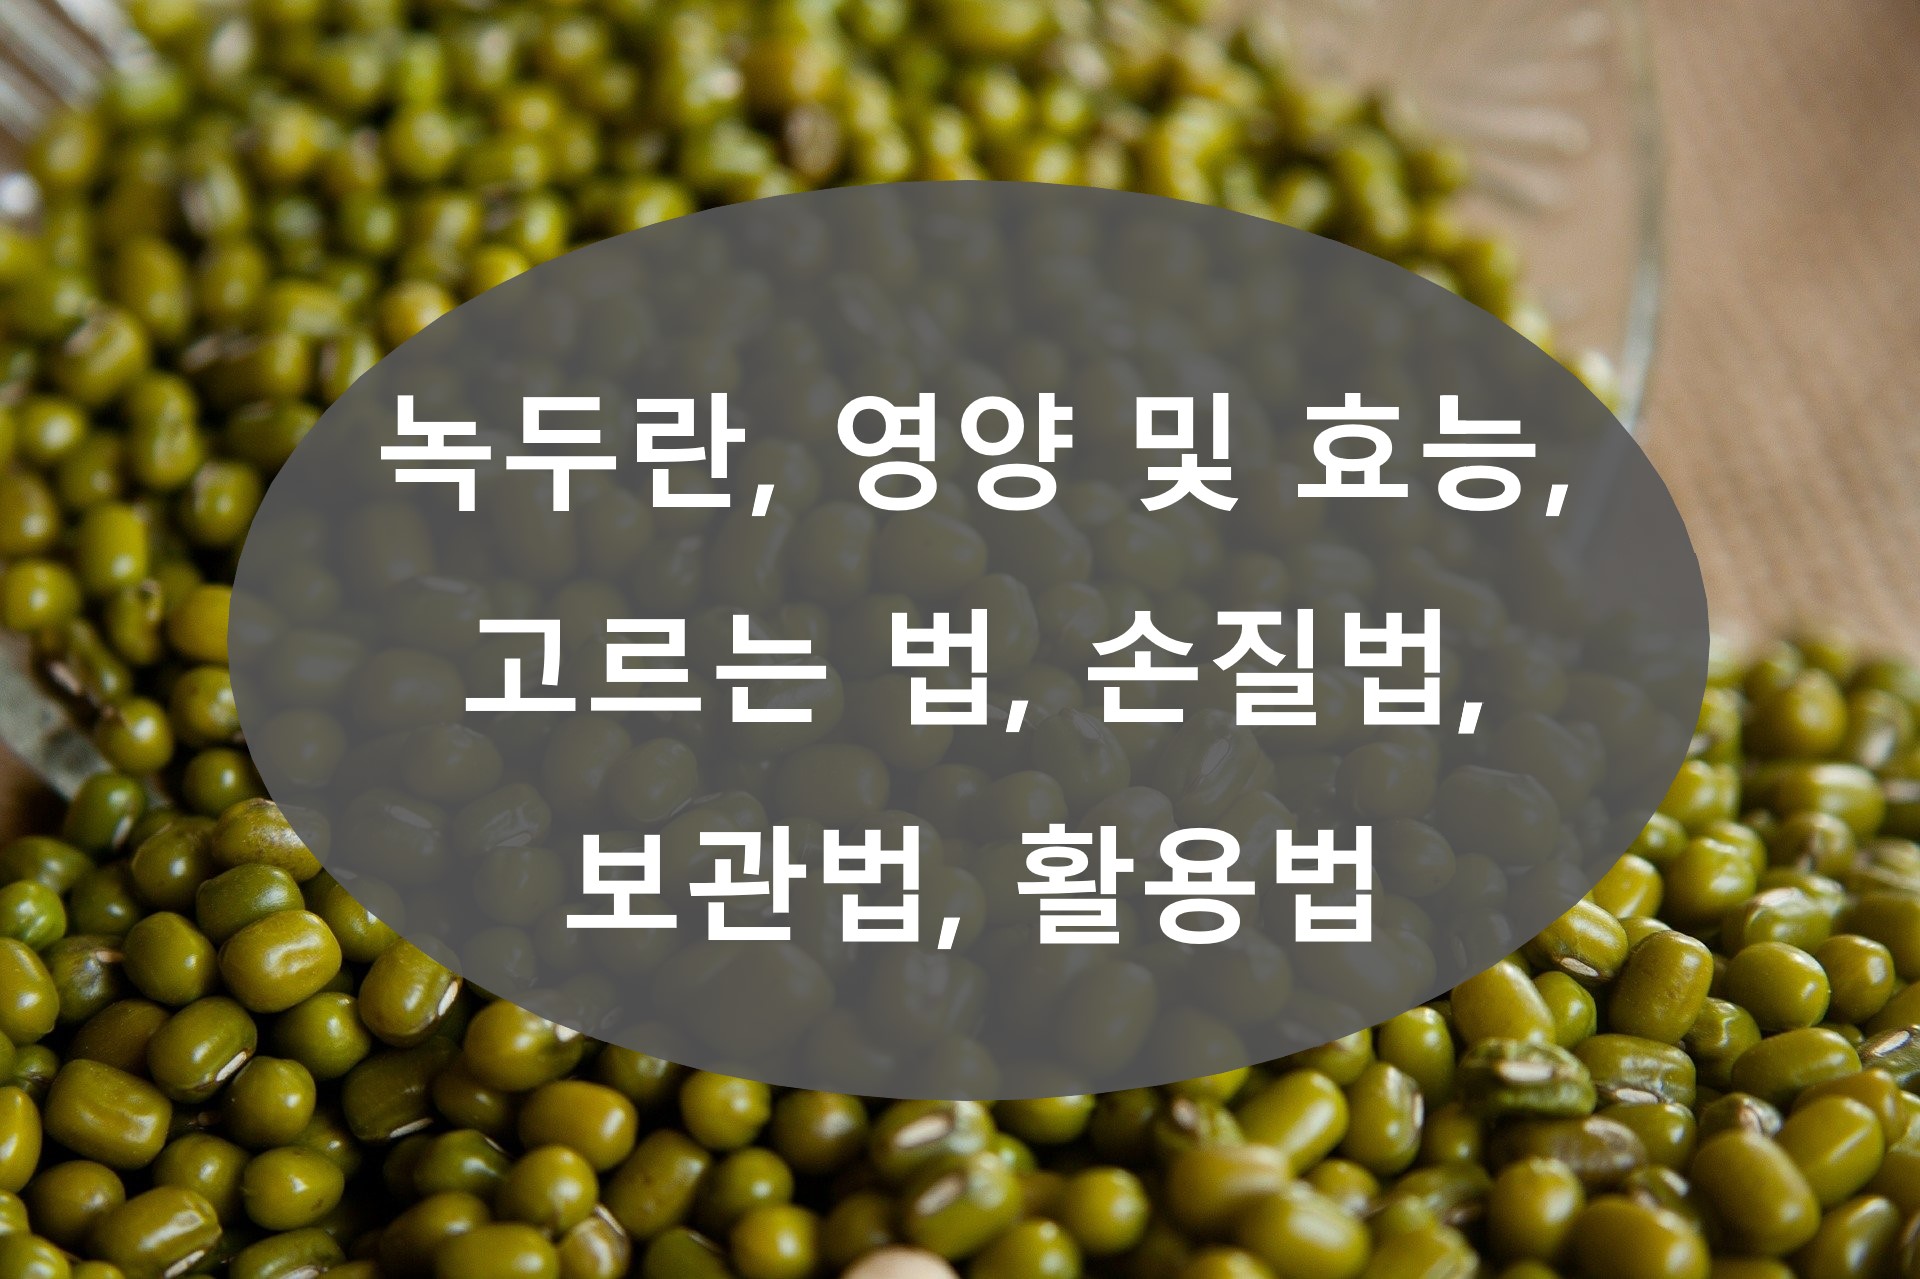 녹두(Mung Bean)란, 영양 및 효능, 고르는 법, 손질법, 보관법, 활용법